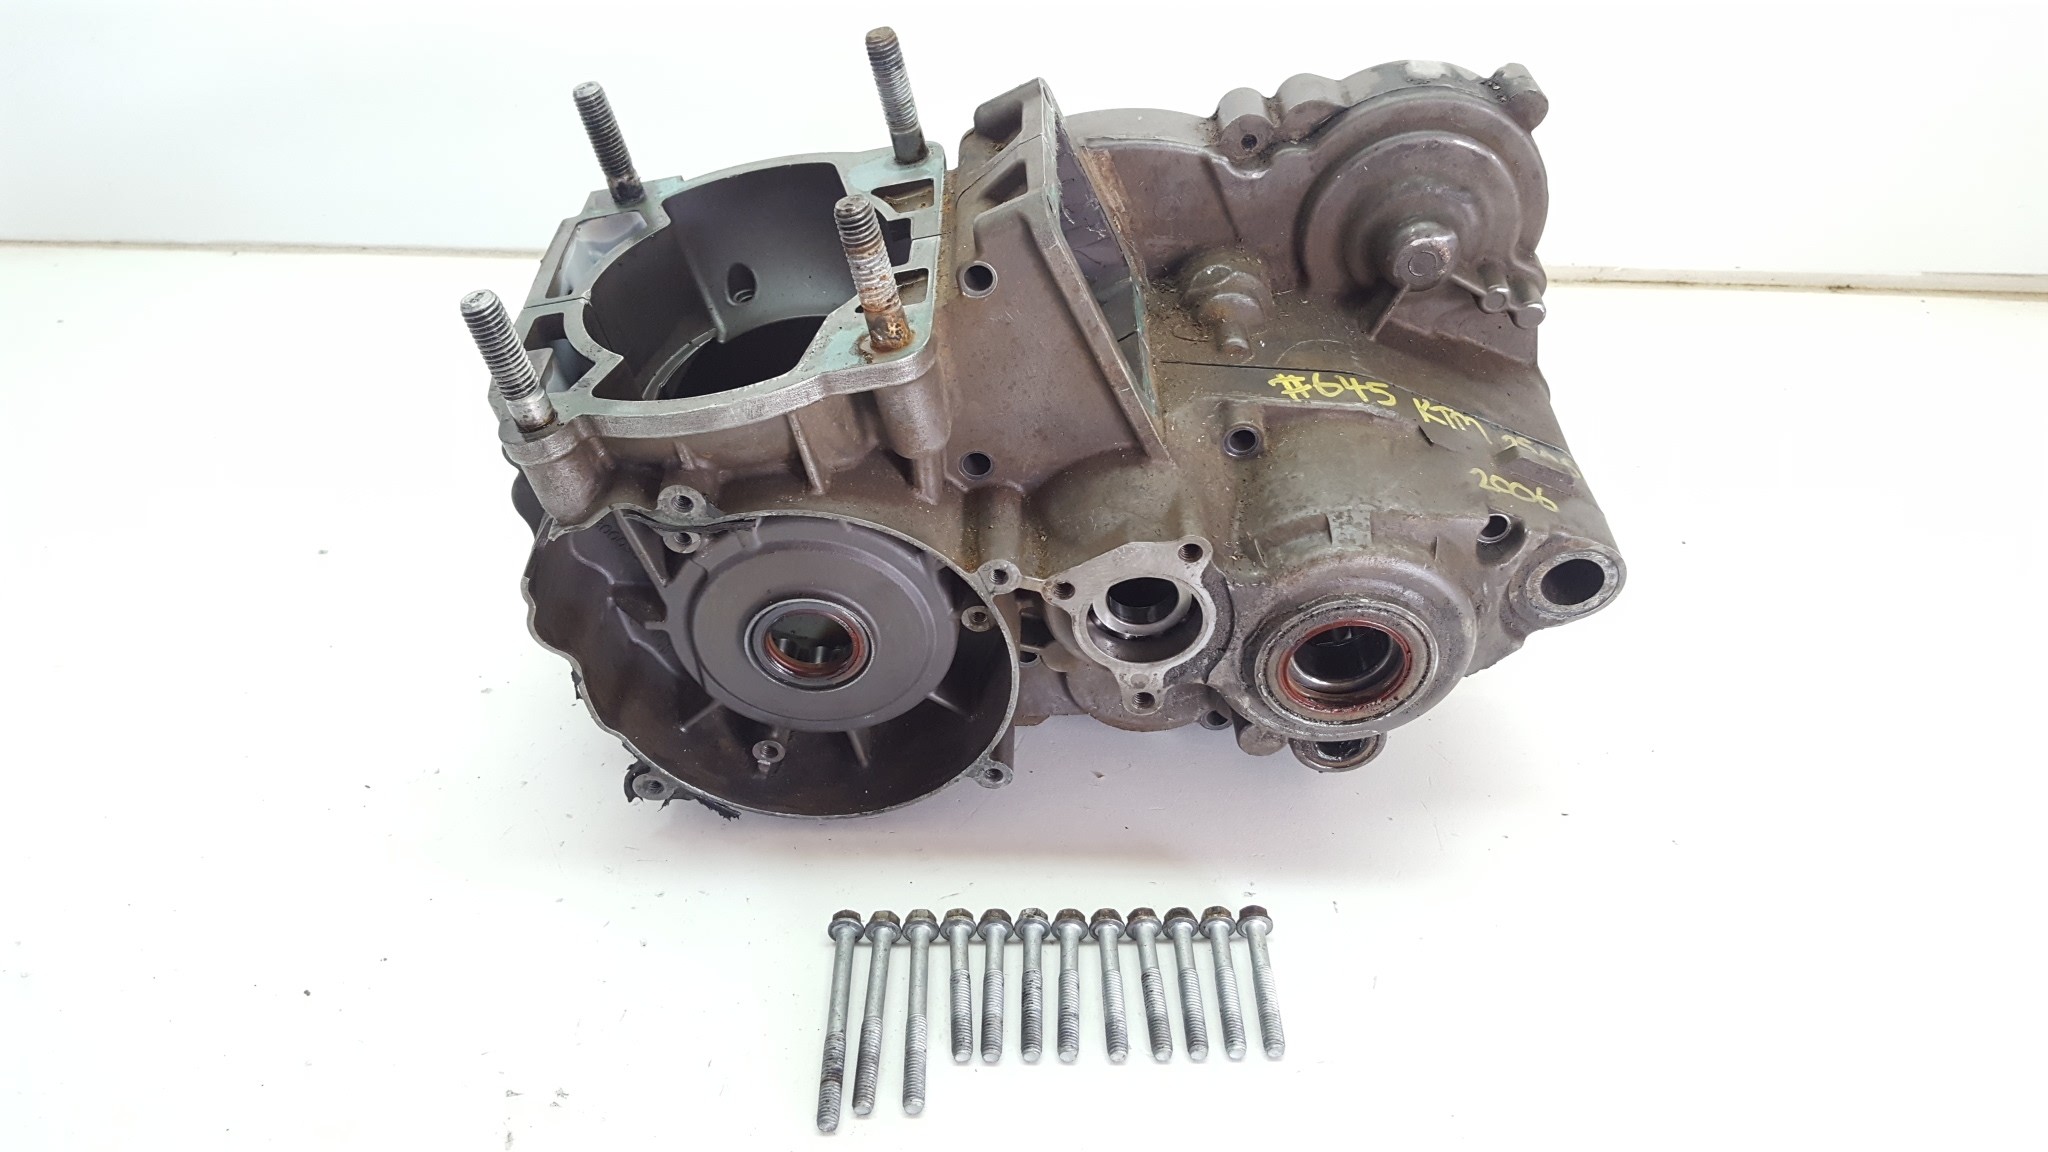 Crank Centre Engine Cases KTM 250SX 250 SX Crankcases Repaired 2003-2016 #645